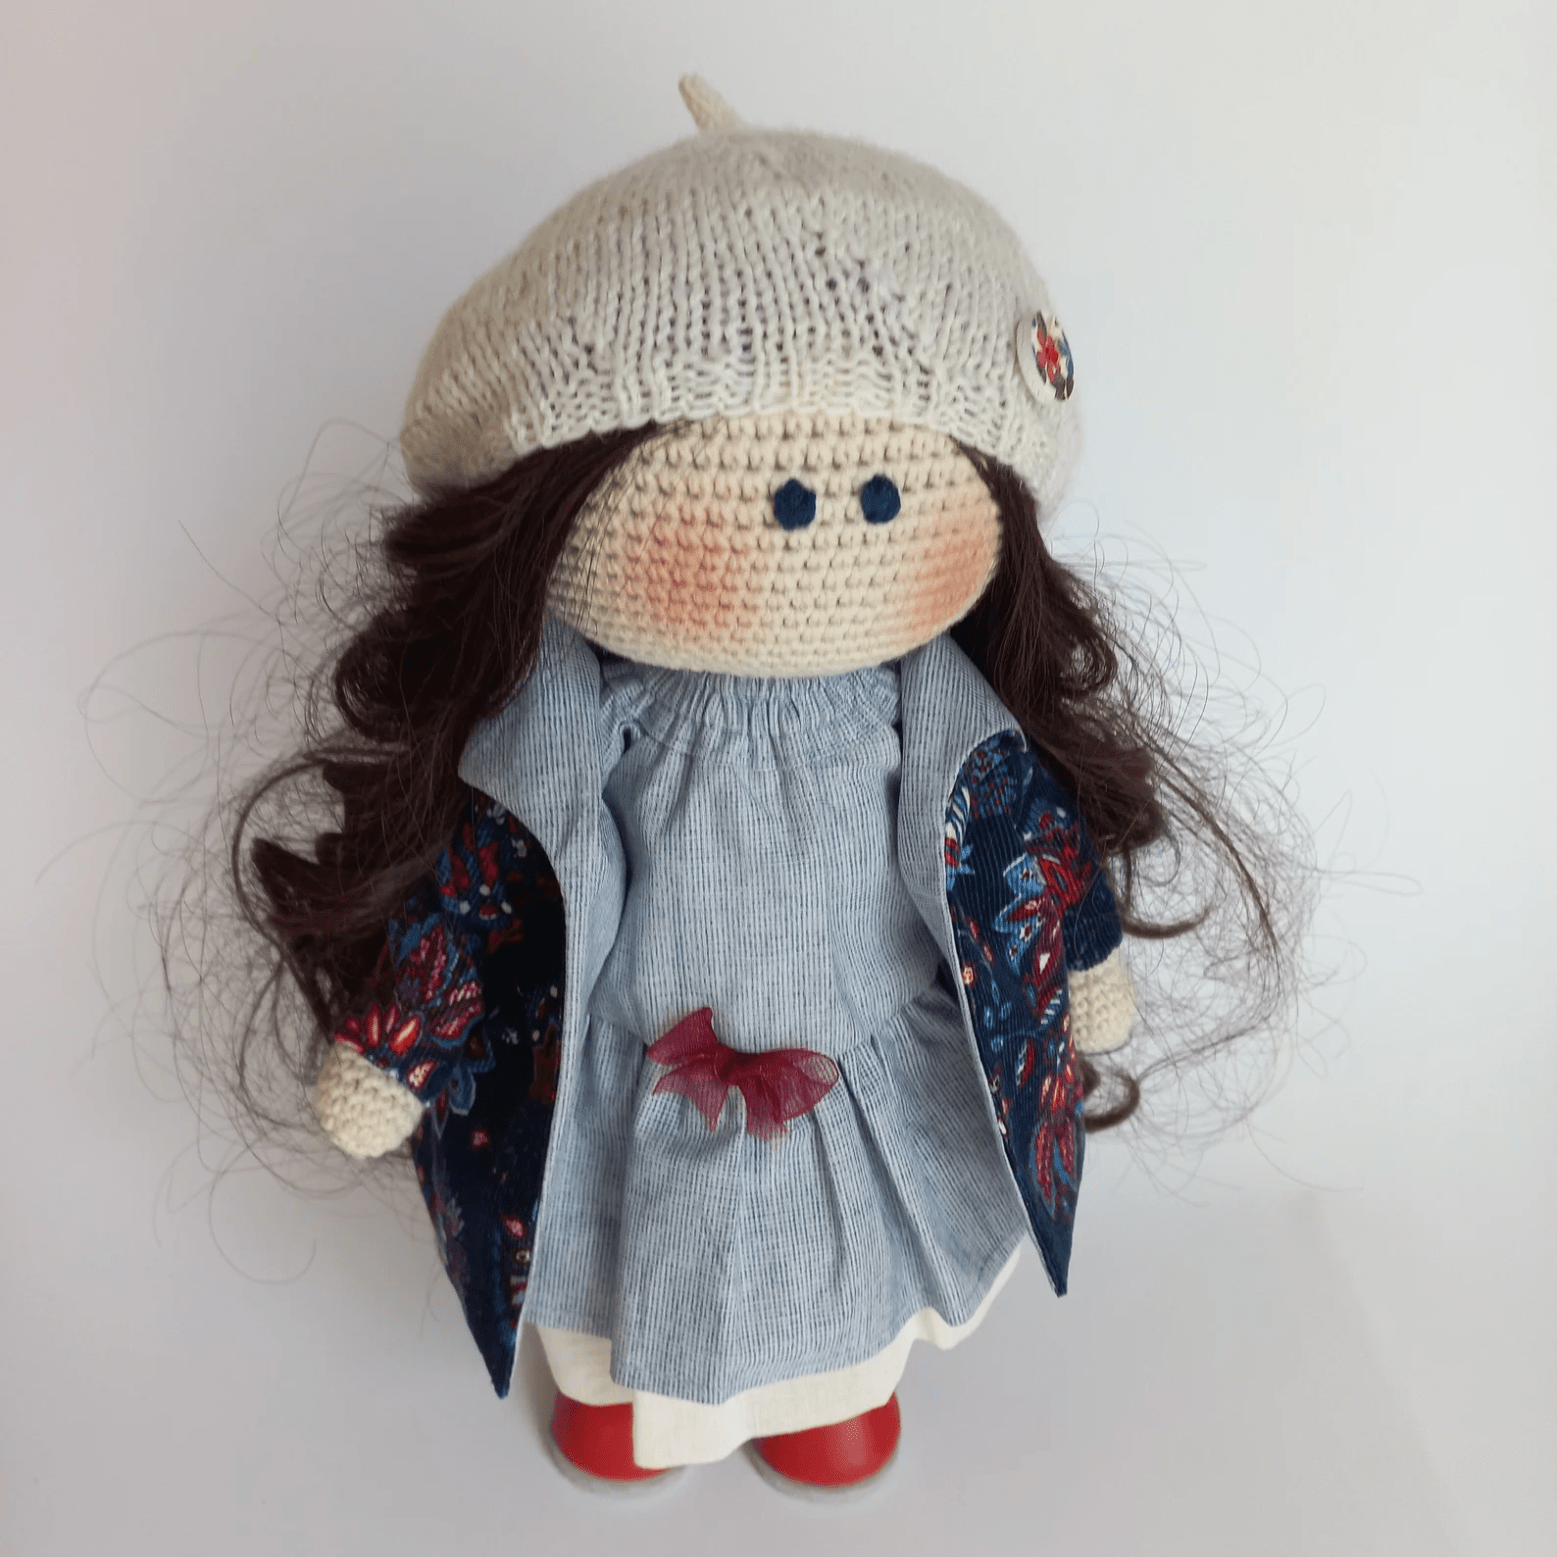 Oscar the Playful Crochet Doll